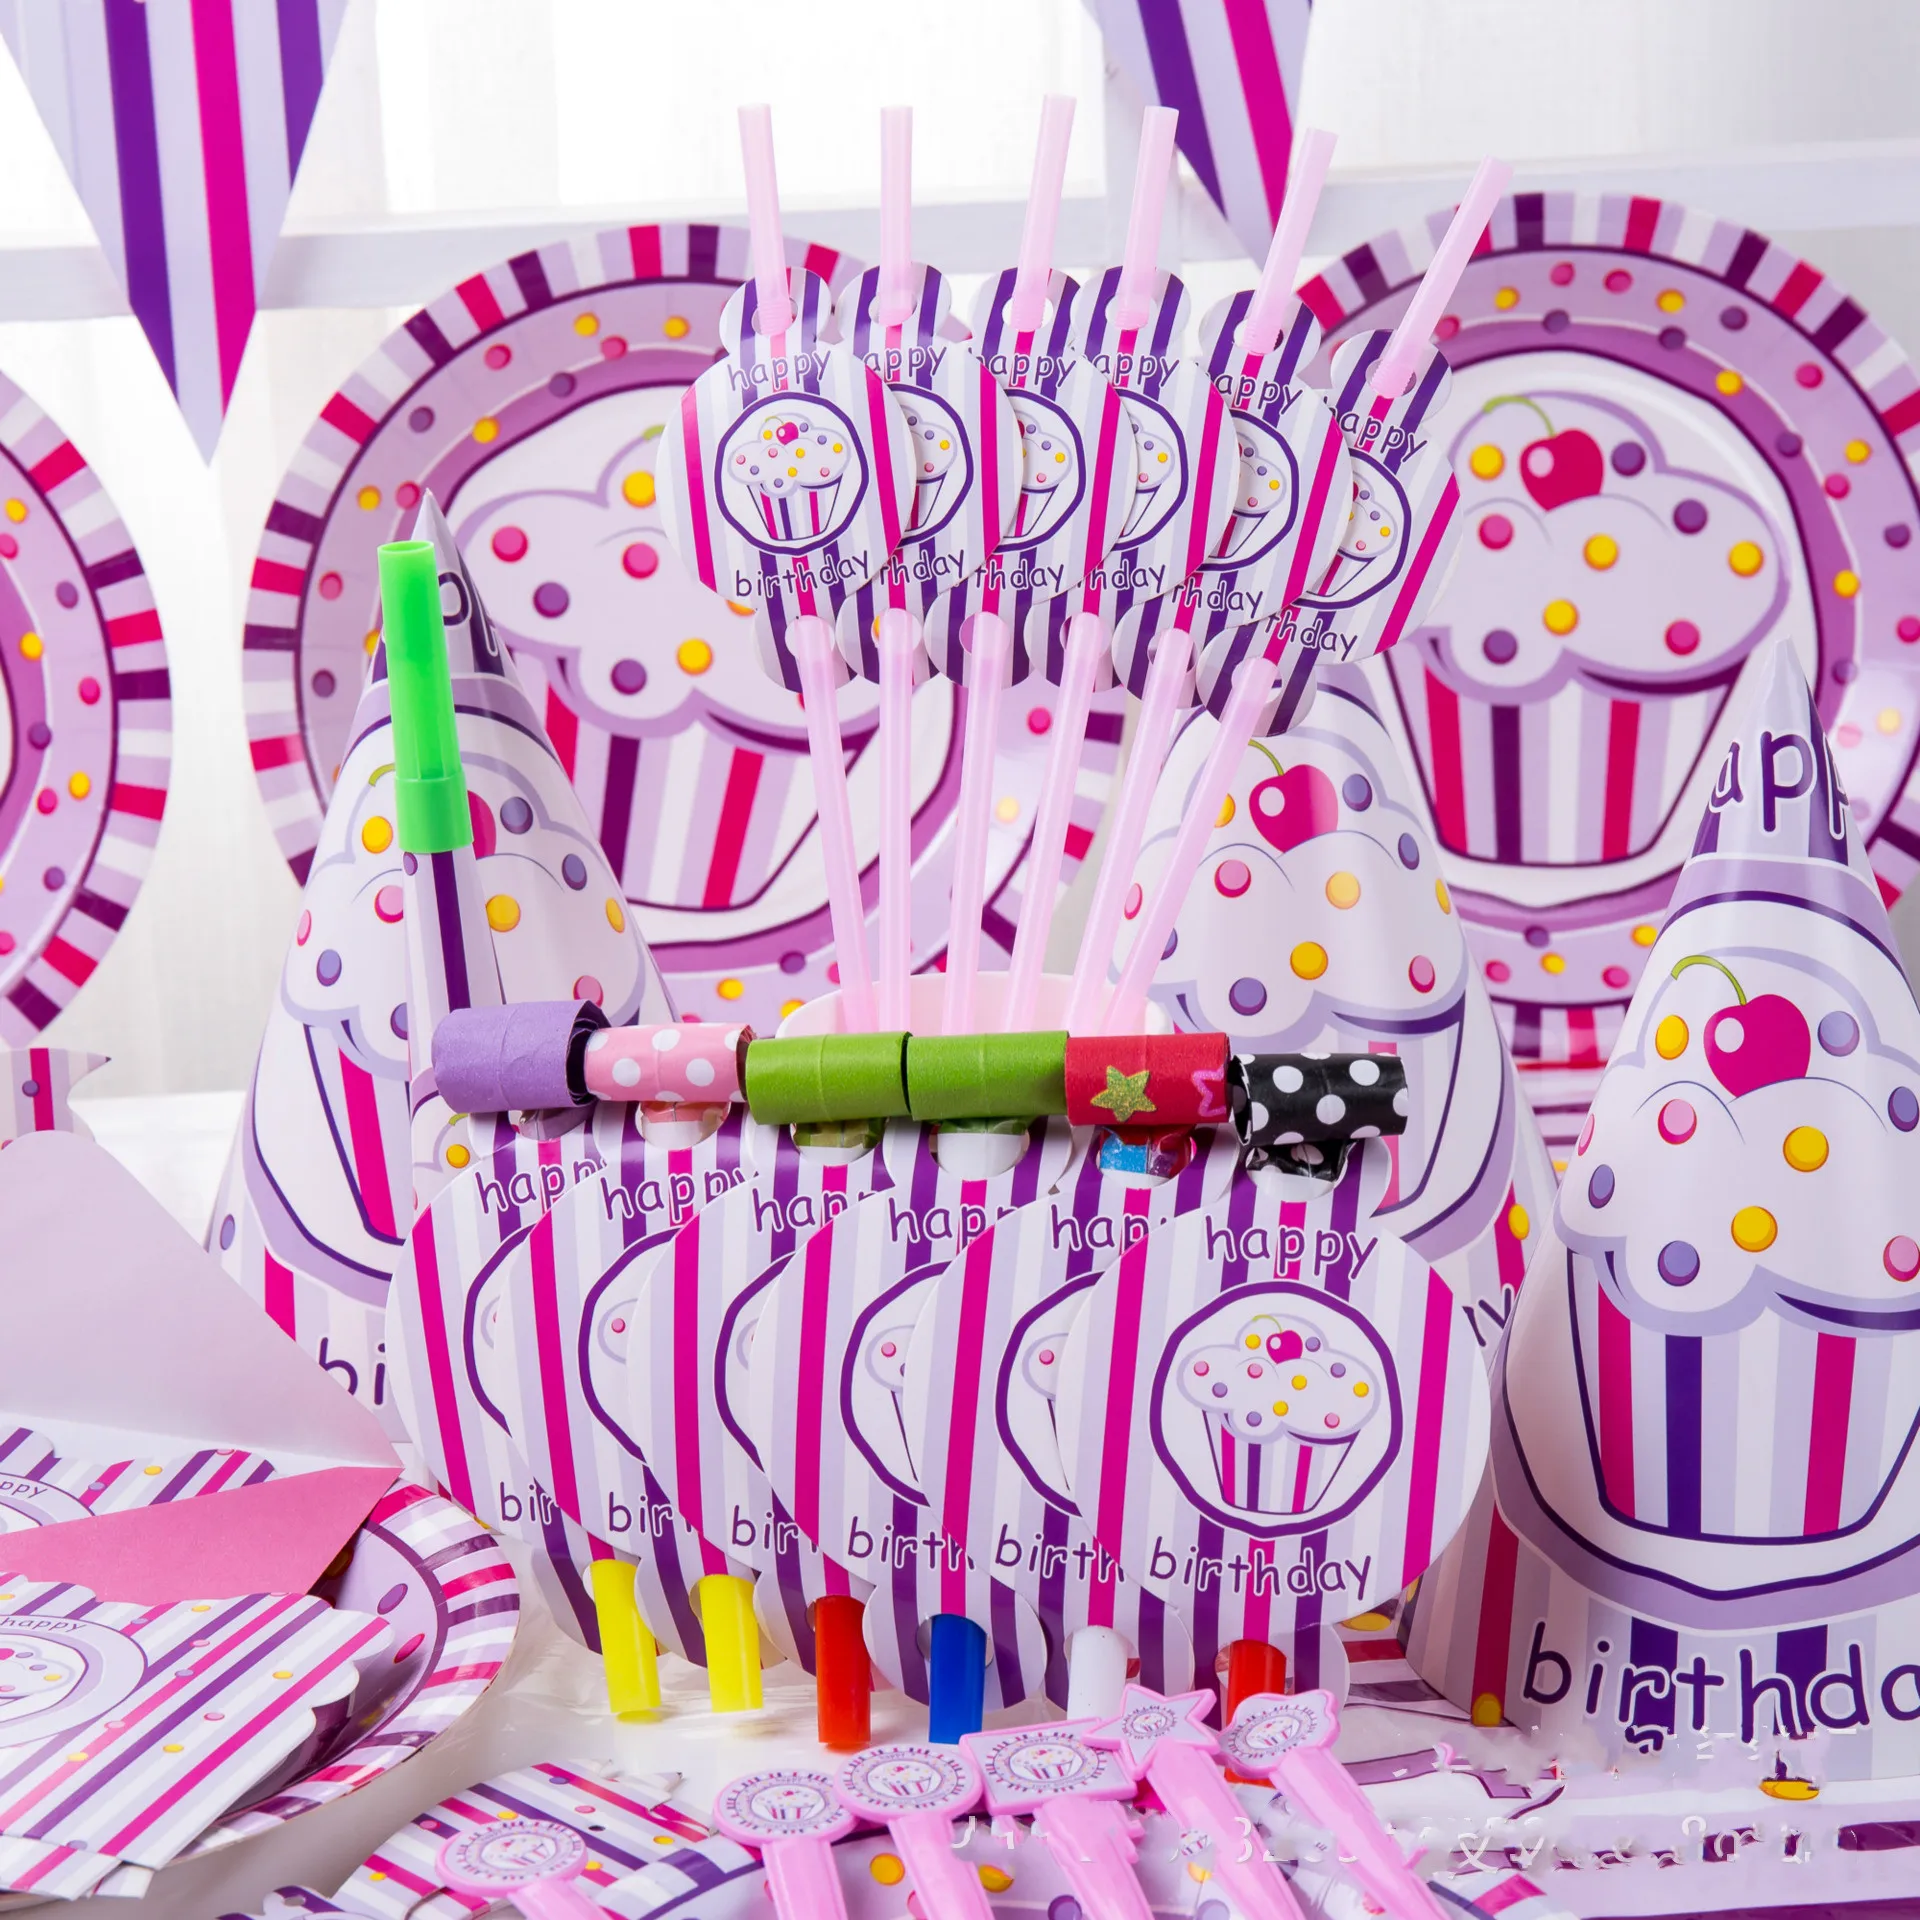 Украшения для детской вечеринки в комплекте 6 человек розовое мороженое тематическая вечеринка на день рождения комплект поставки подарок для ребенка детские товары для оформления девичника в комплекте